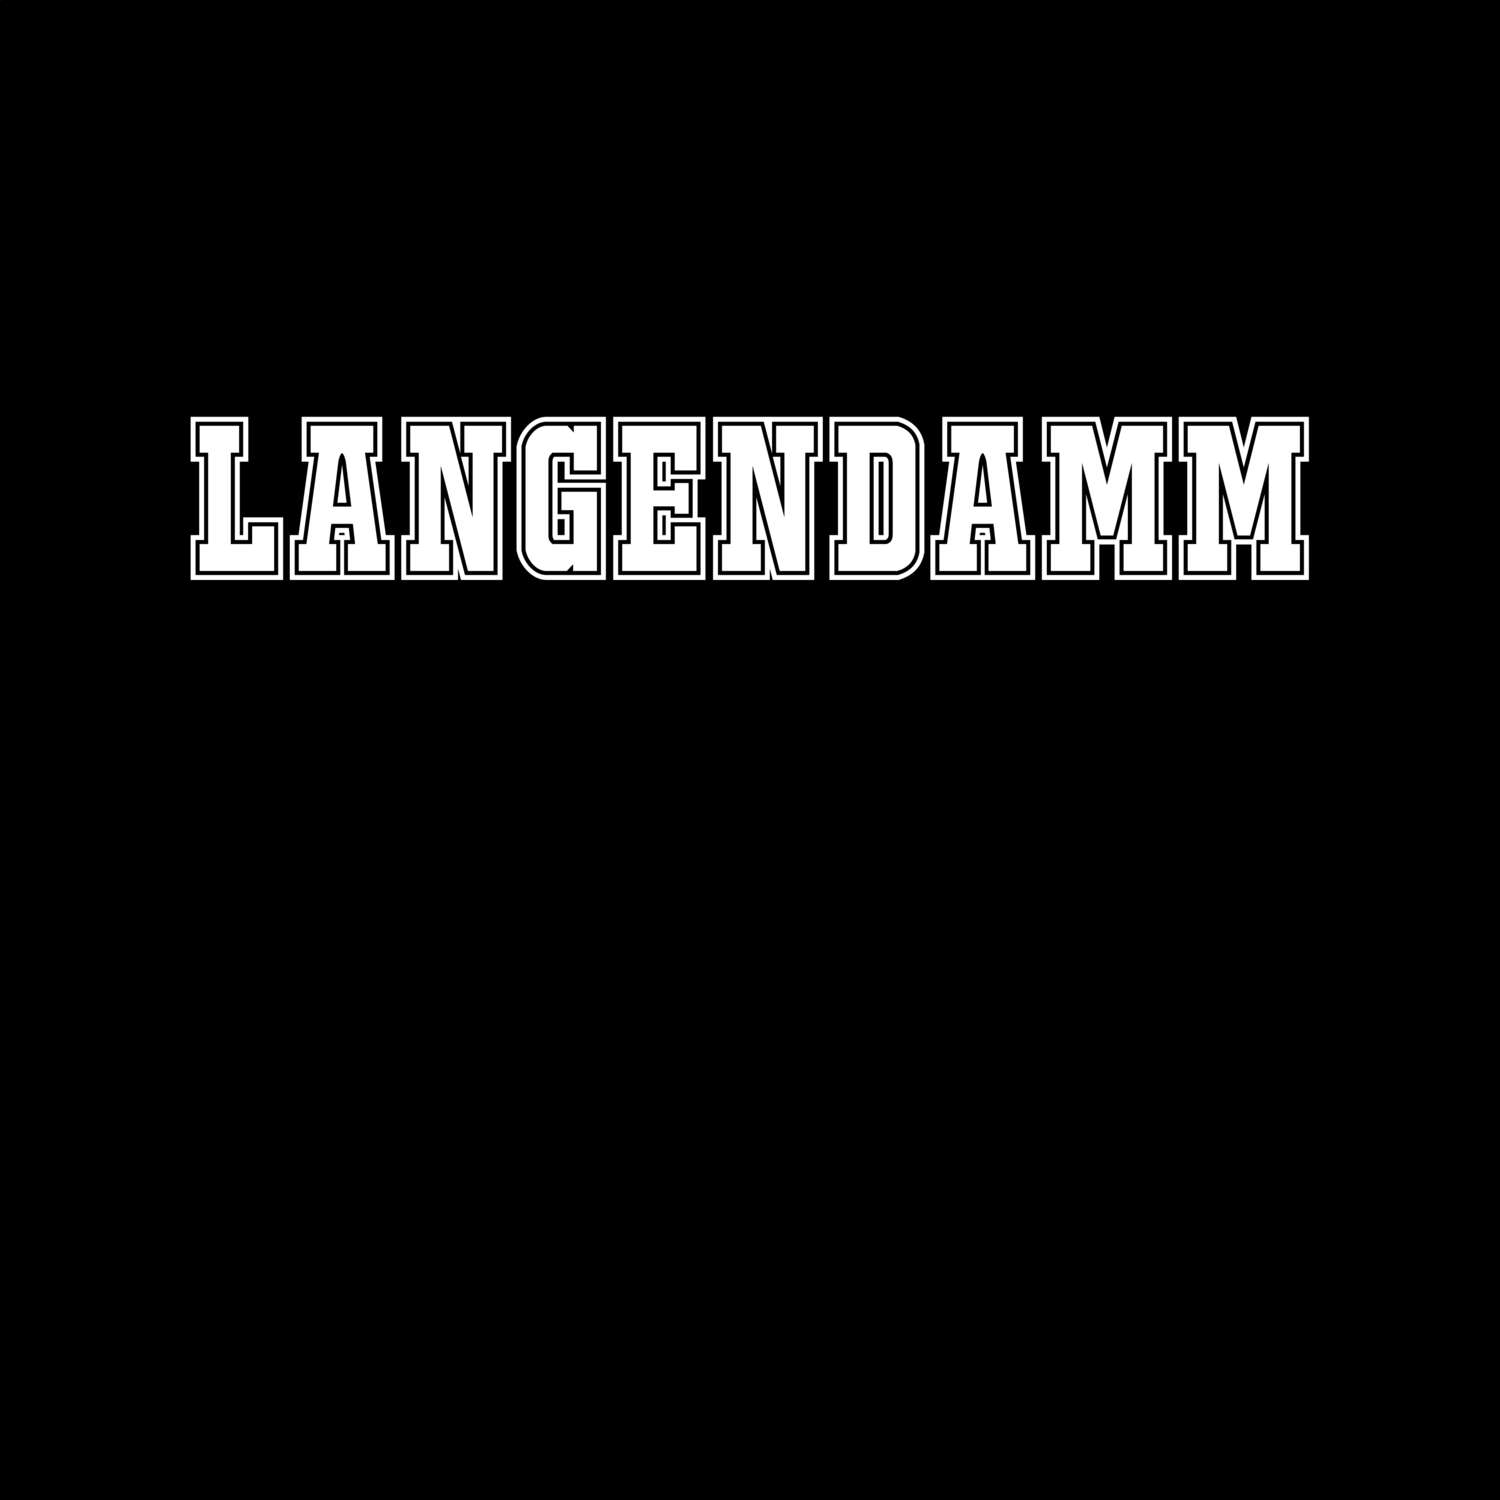 Langendamm T-Shirt »Classic«